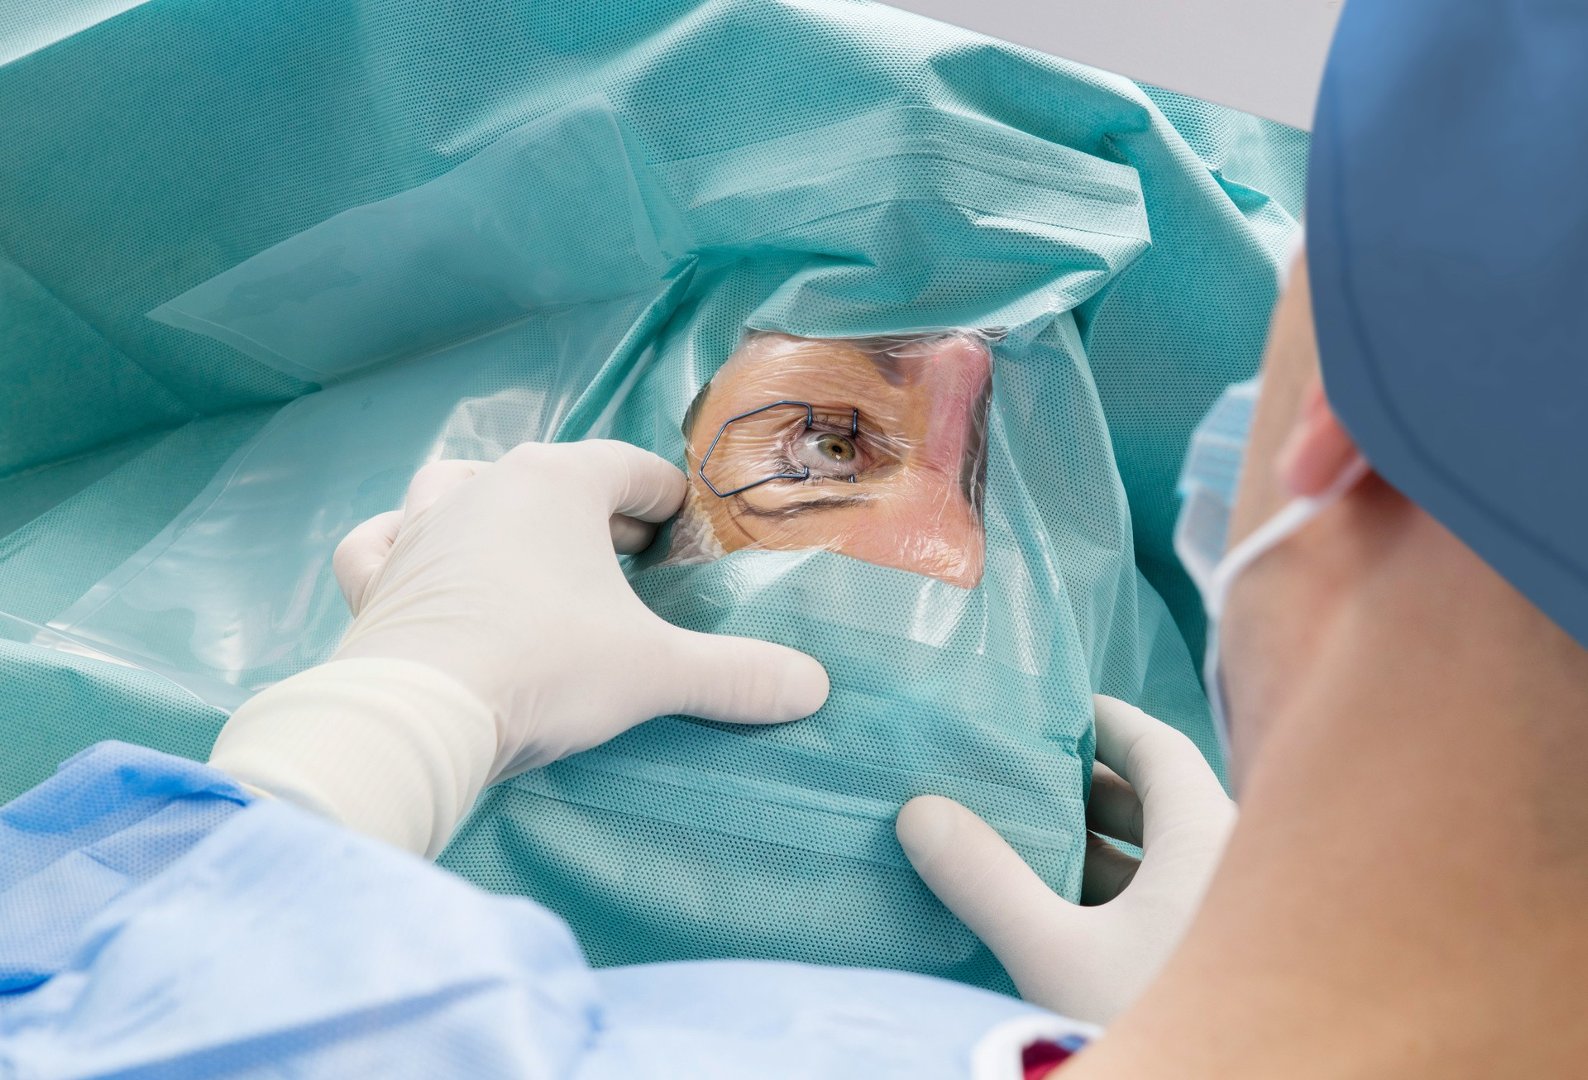 Laserowa korekcja wzroku – jak przebiega zabieg, kto może z niego  skorzystać, a w jakich przypadkach jest przeciwwskazany | Strona Zdrowia